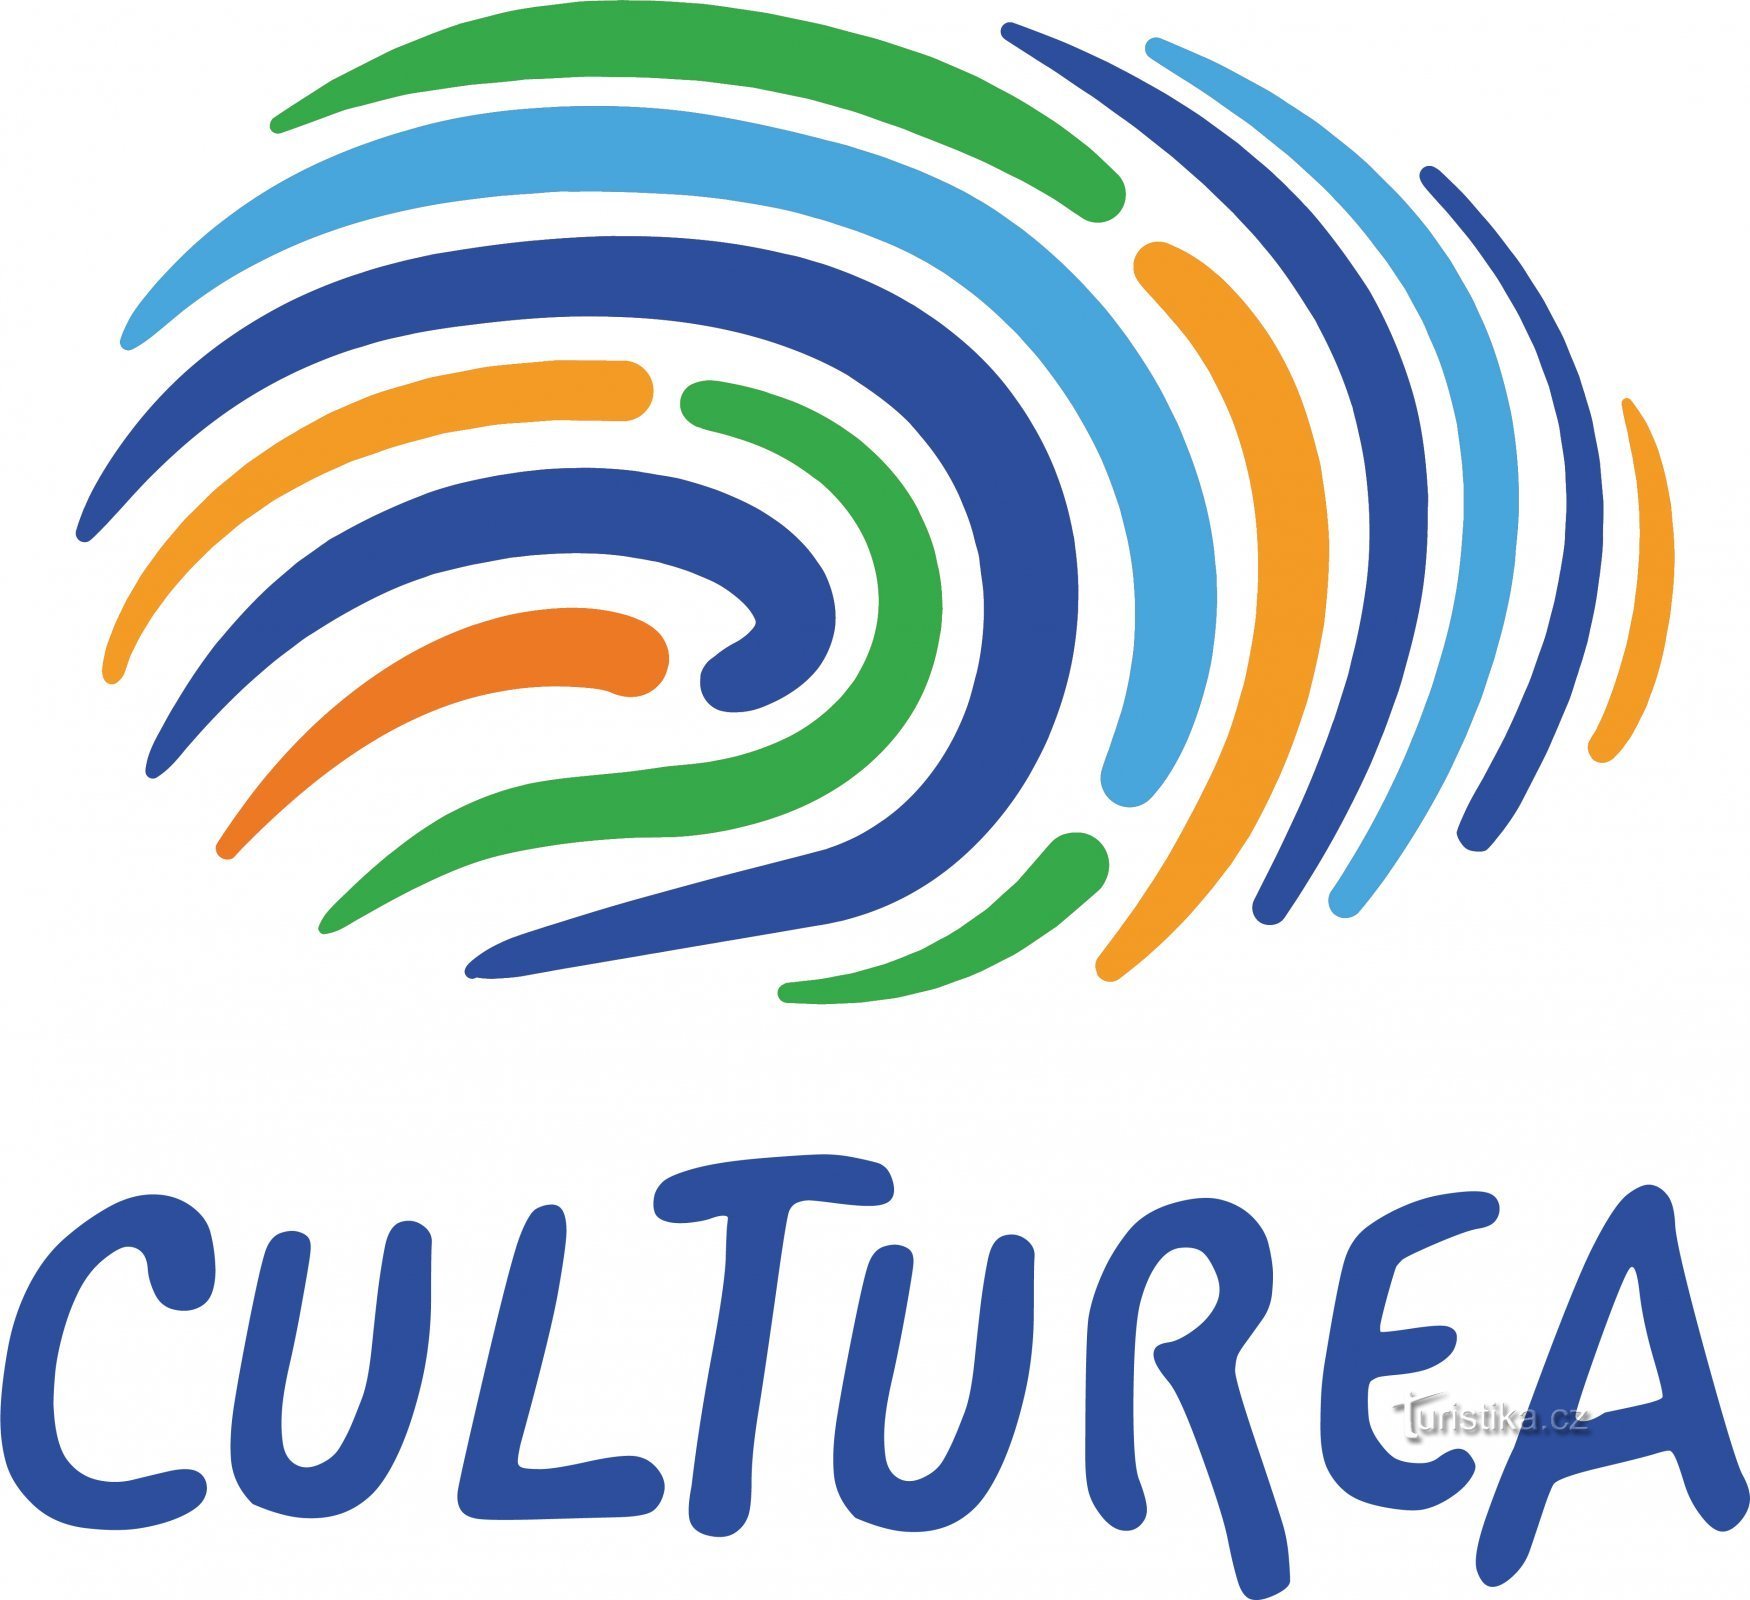 „Călătorește altfel” cu proiectul Culturea!